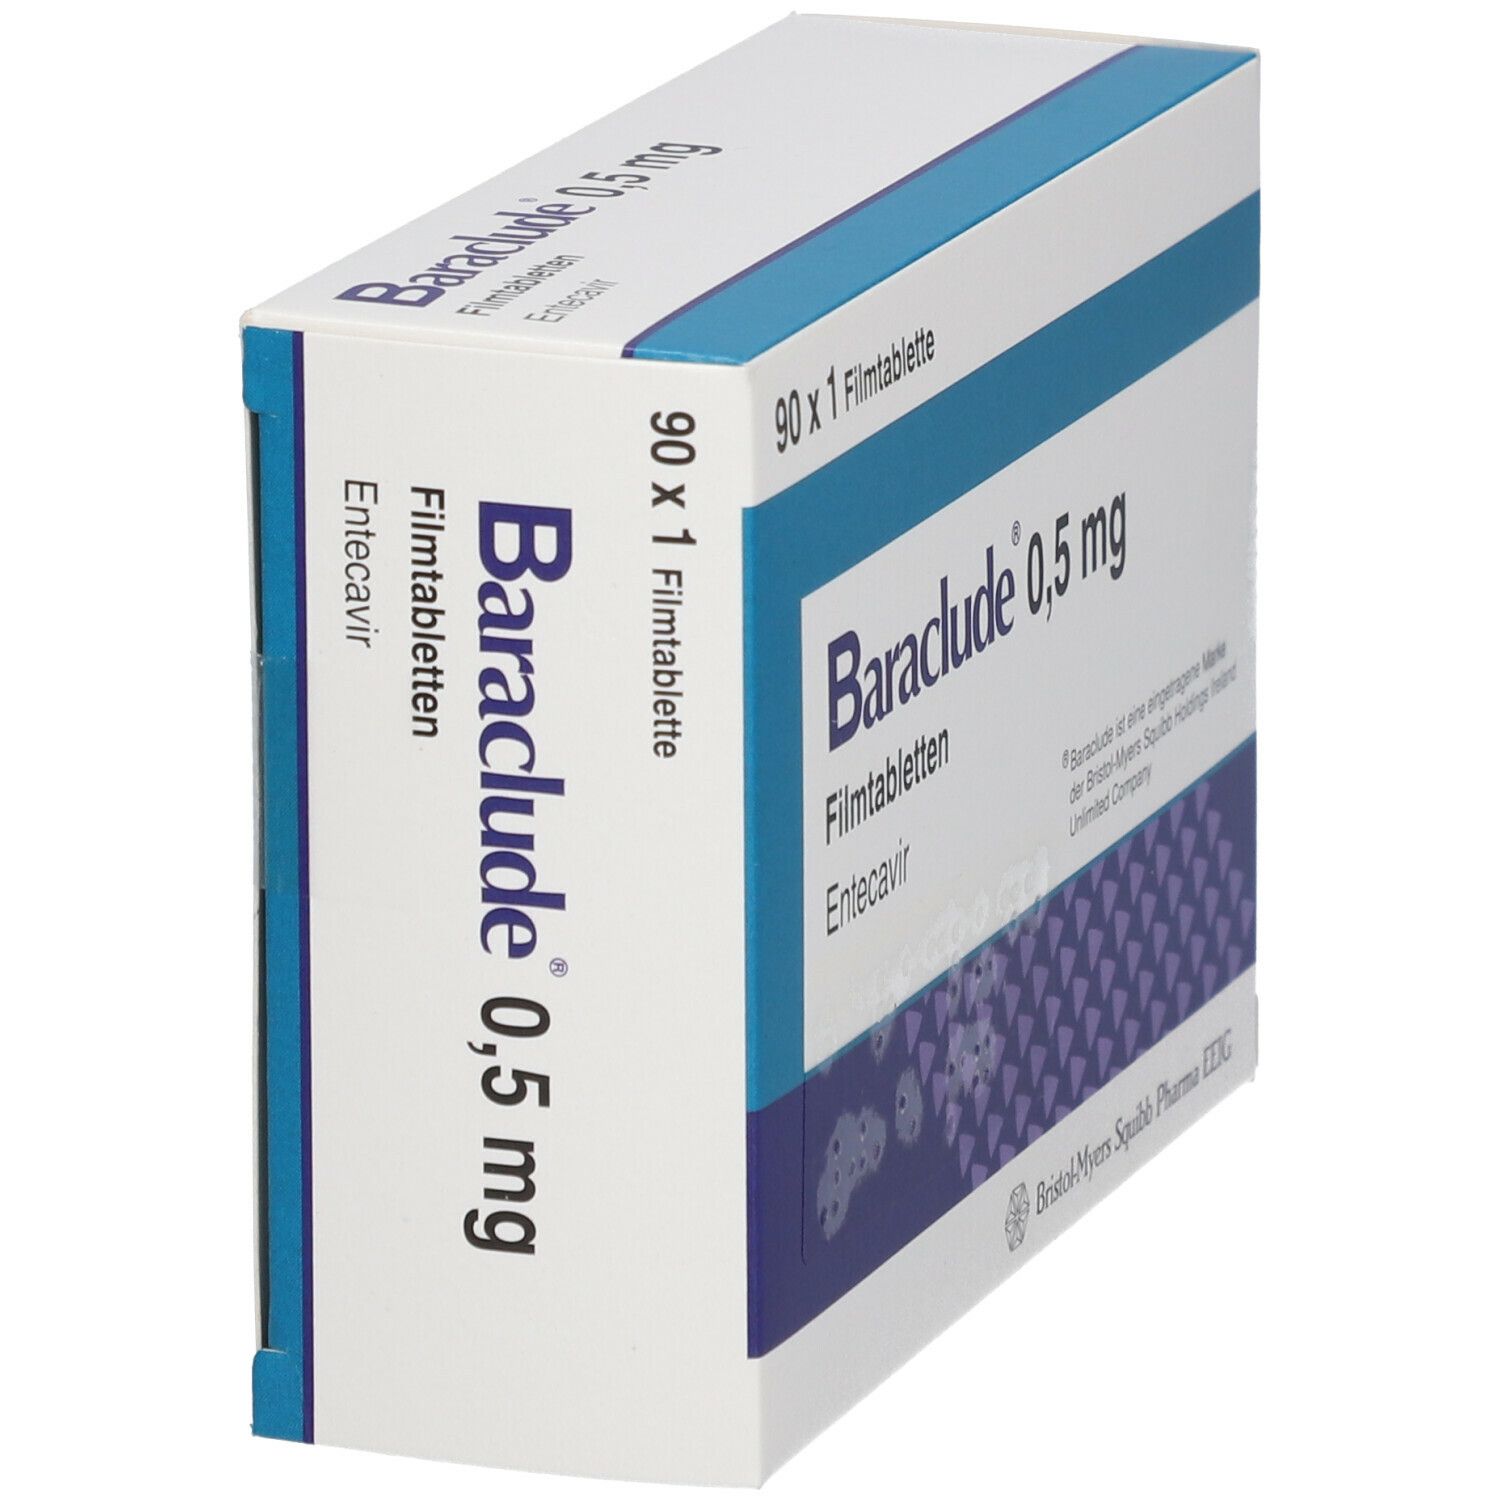 Baraclude 0,5 mg